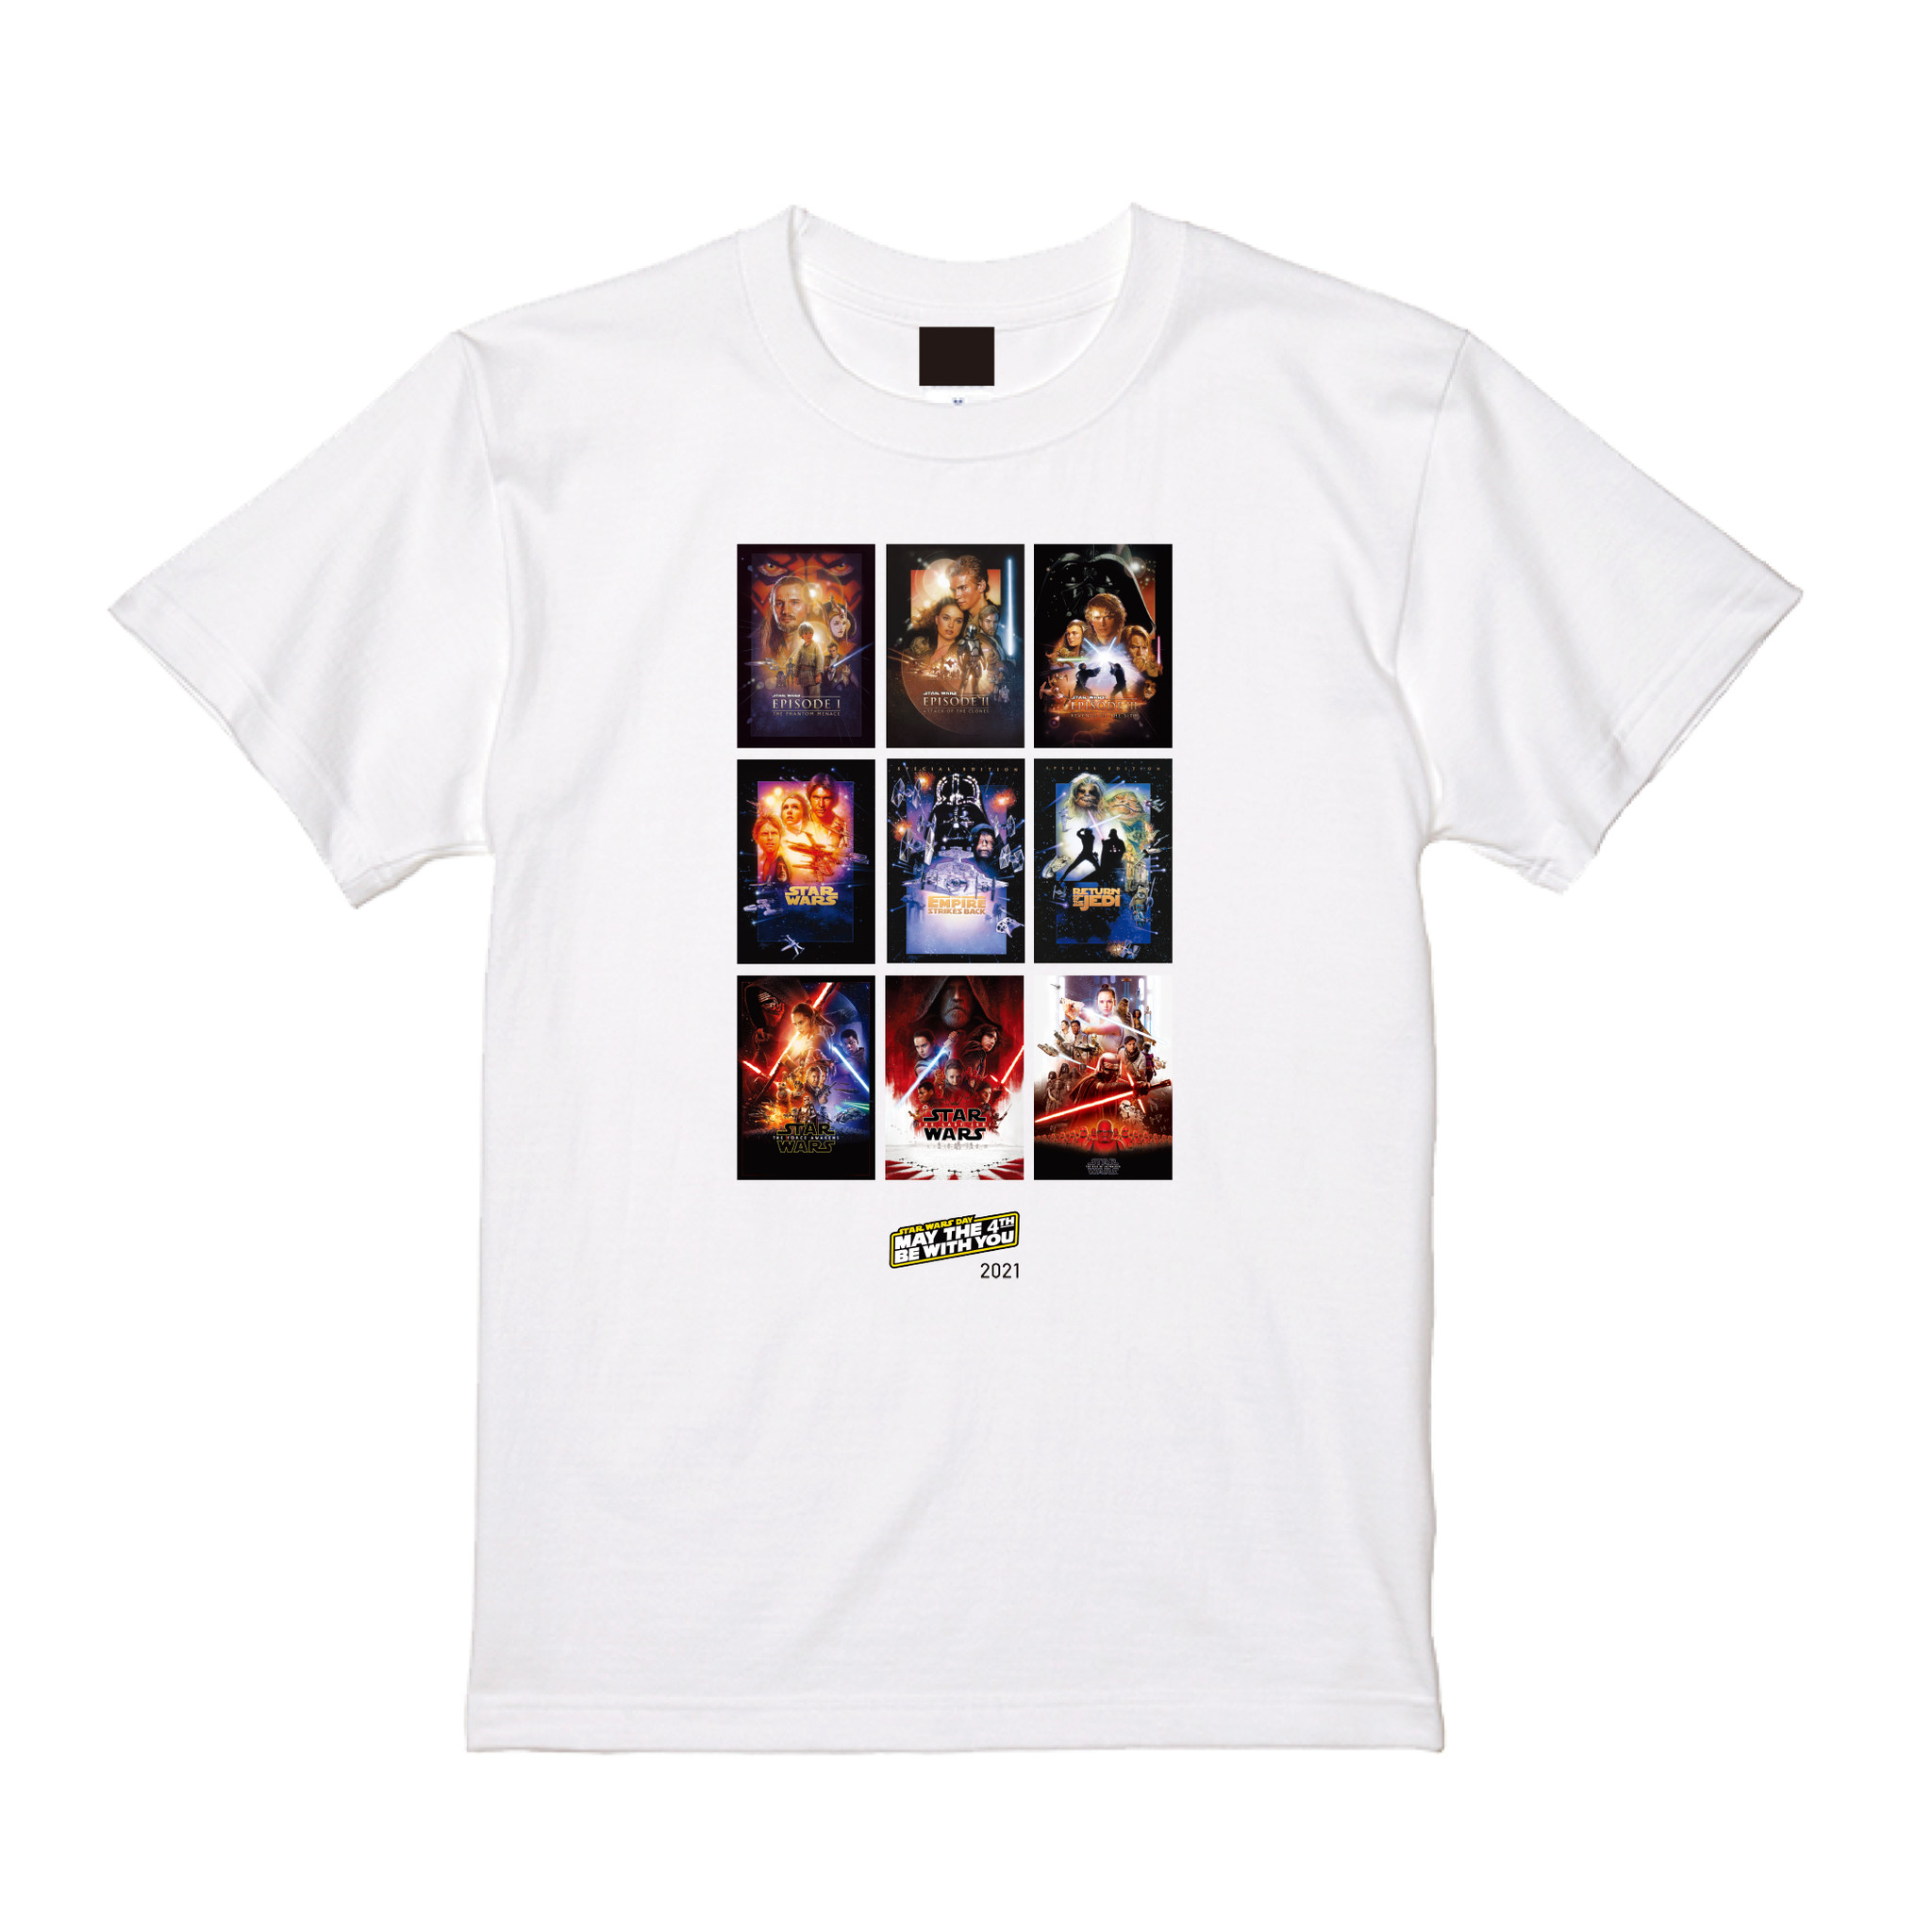 5月4日の スター ウォーズの日 を記念した 21年限定デザインtシャツを Shopdisney ショップディズニー で本日より予約販売開始 ウォルト ディズニー ジャパン株式会社のプレスリリース